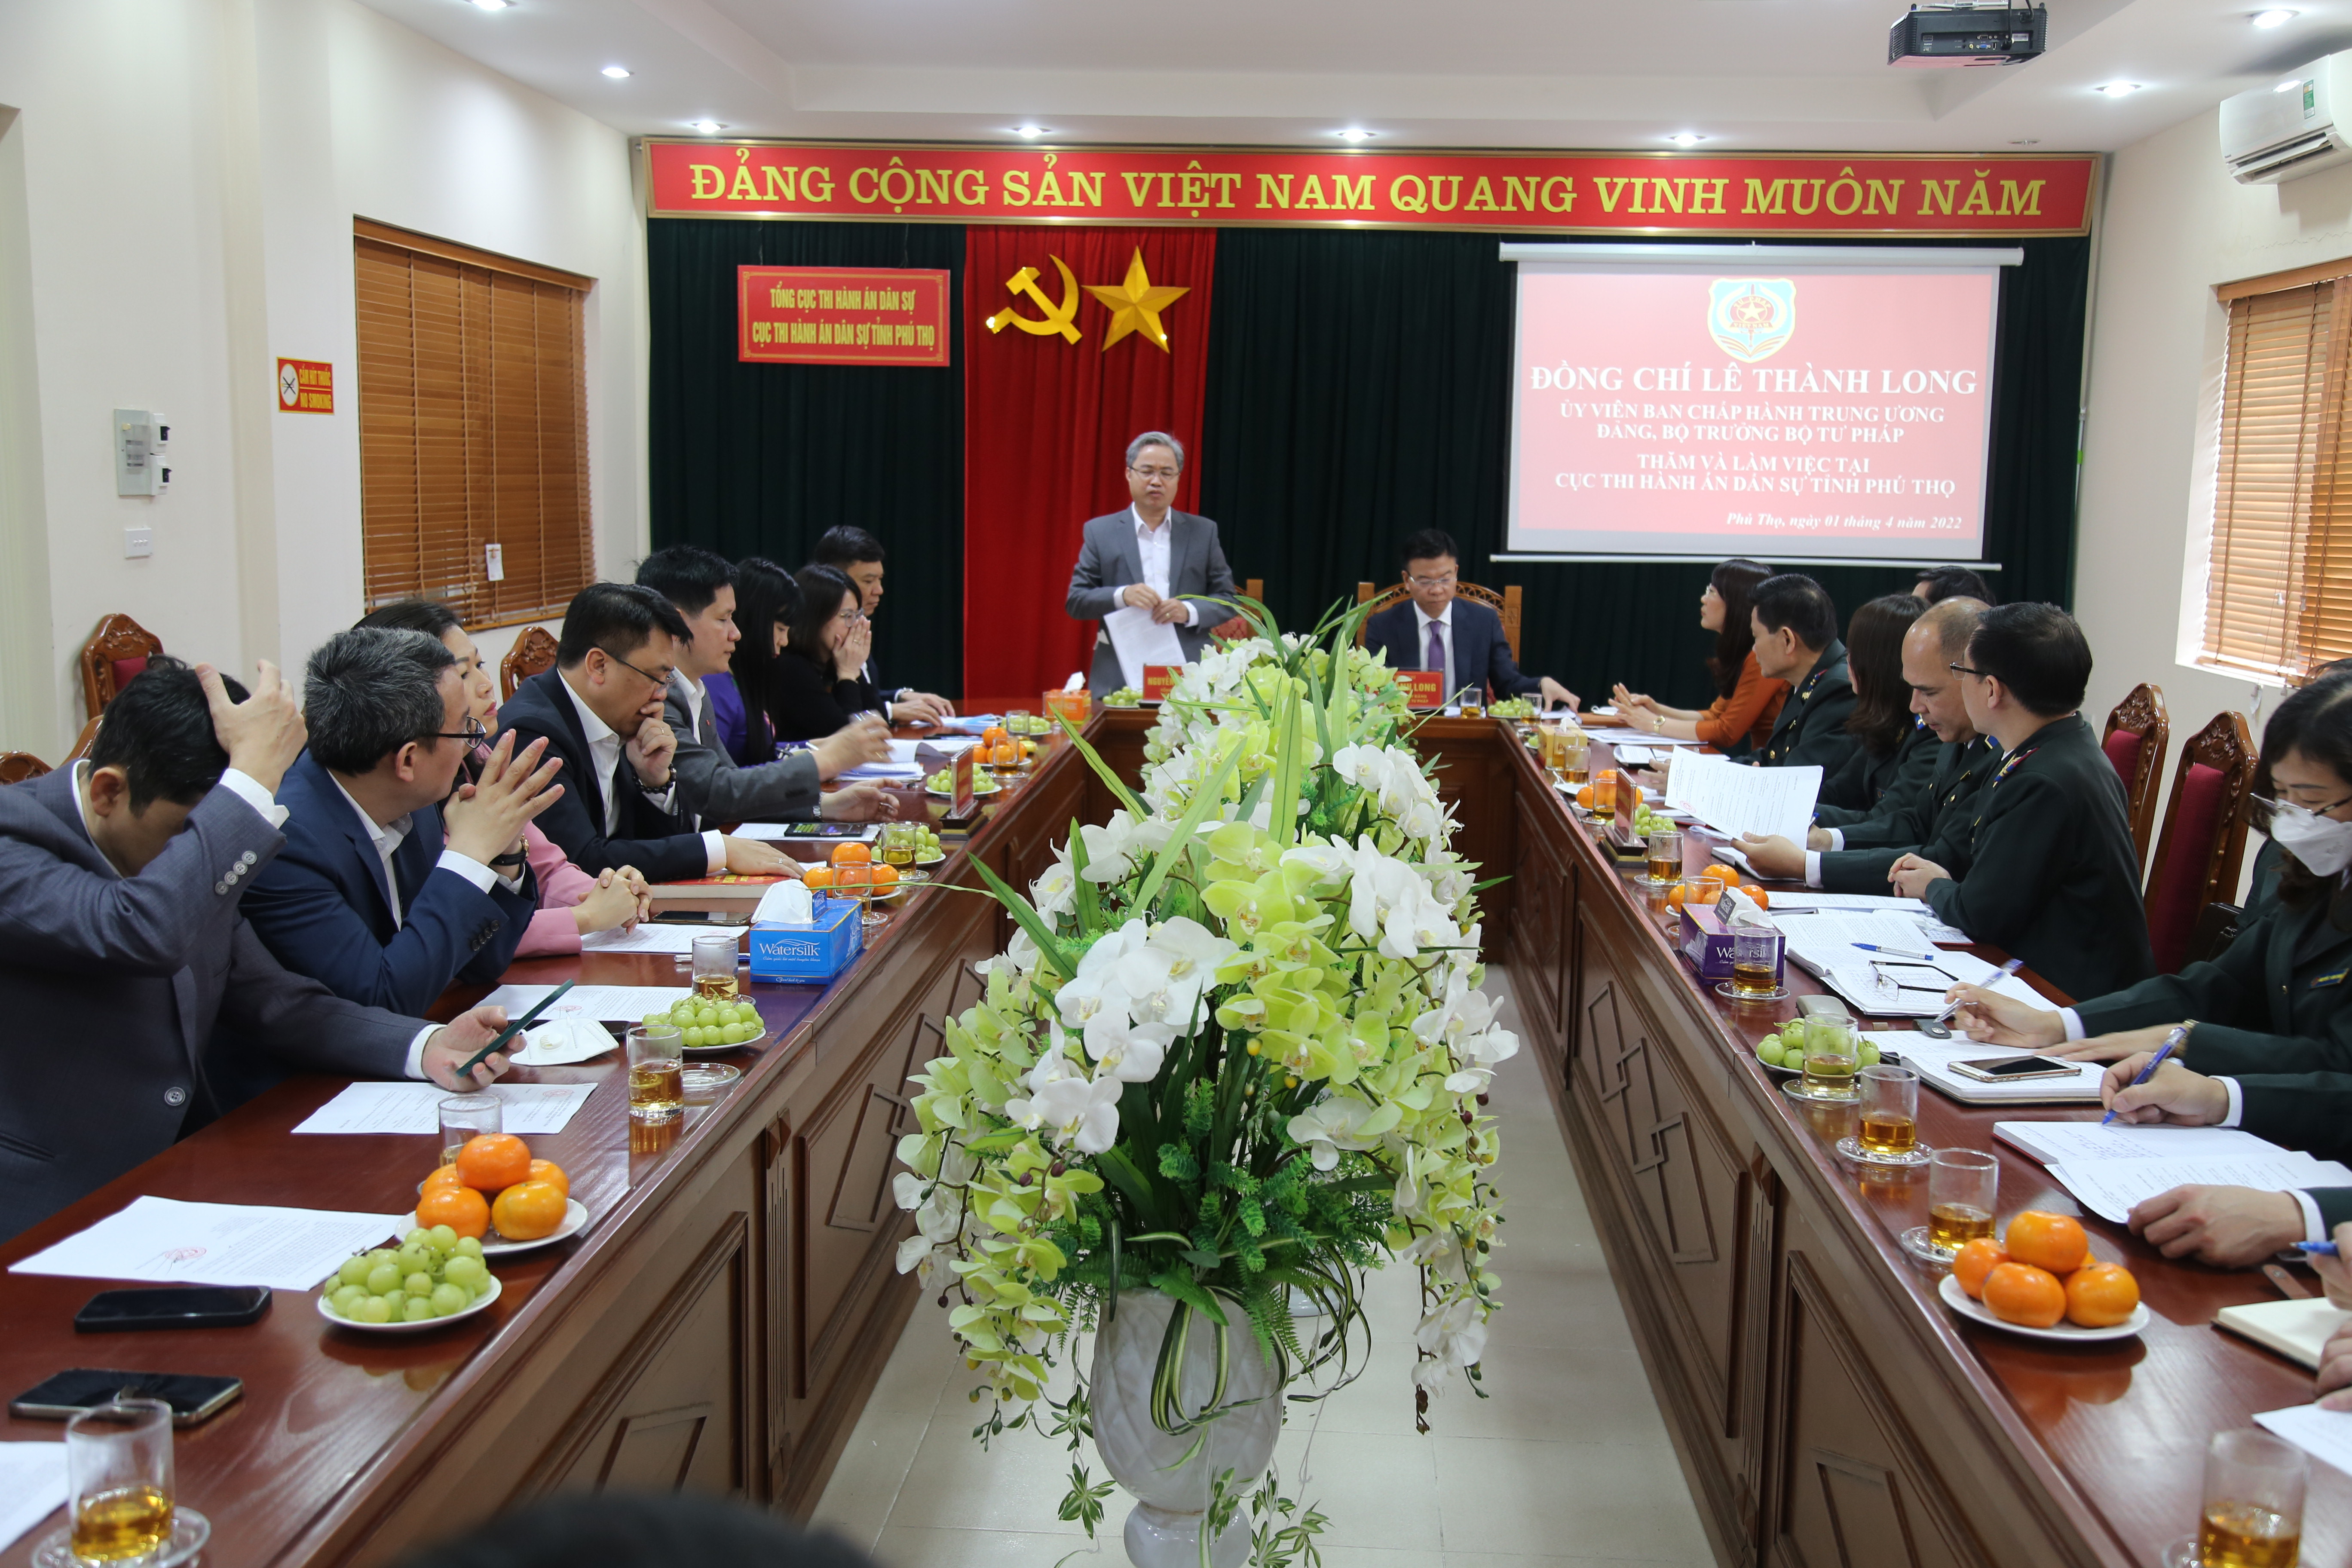 Đồng chí Lê Thành Long, Ủy viên Ban chấp hành Trung ương Đảng, Bộ trưởng Bộ Tư pháp thăm và làm việc tại Cục Thi hành án dân sự tỉnh Phú Thọ